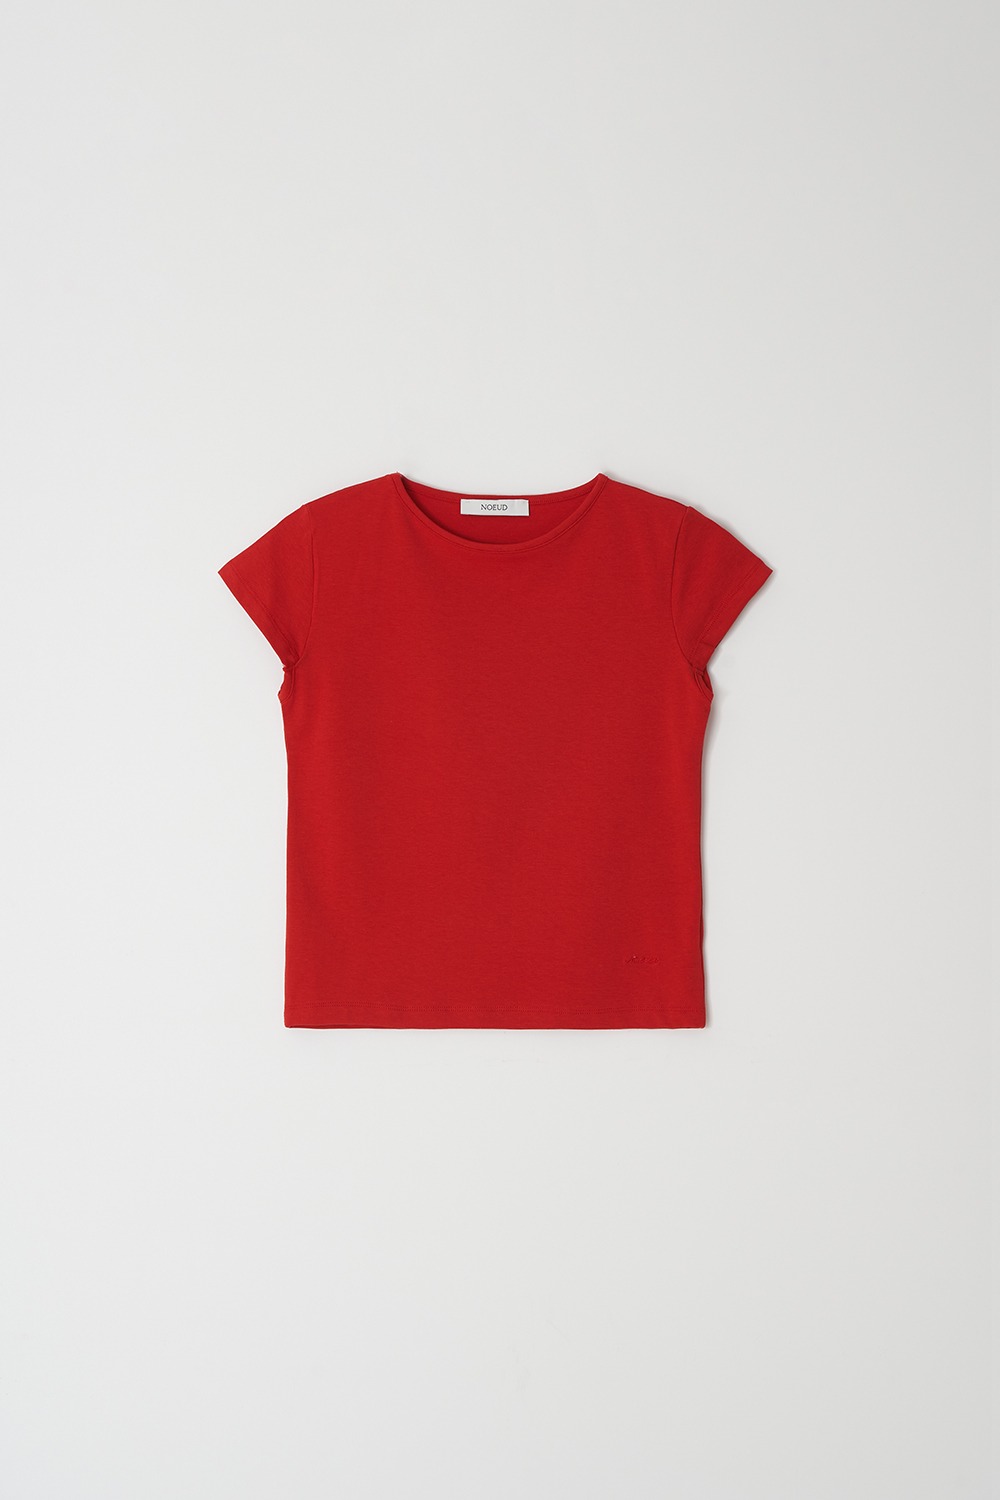 Geek cap sleeve T-shirt (Red)